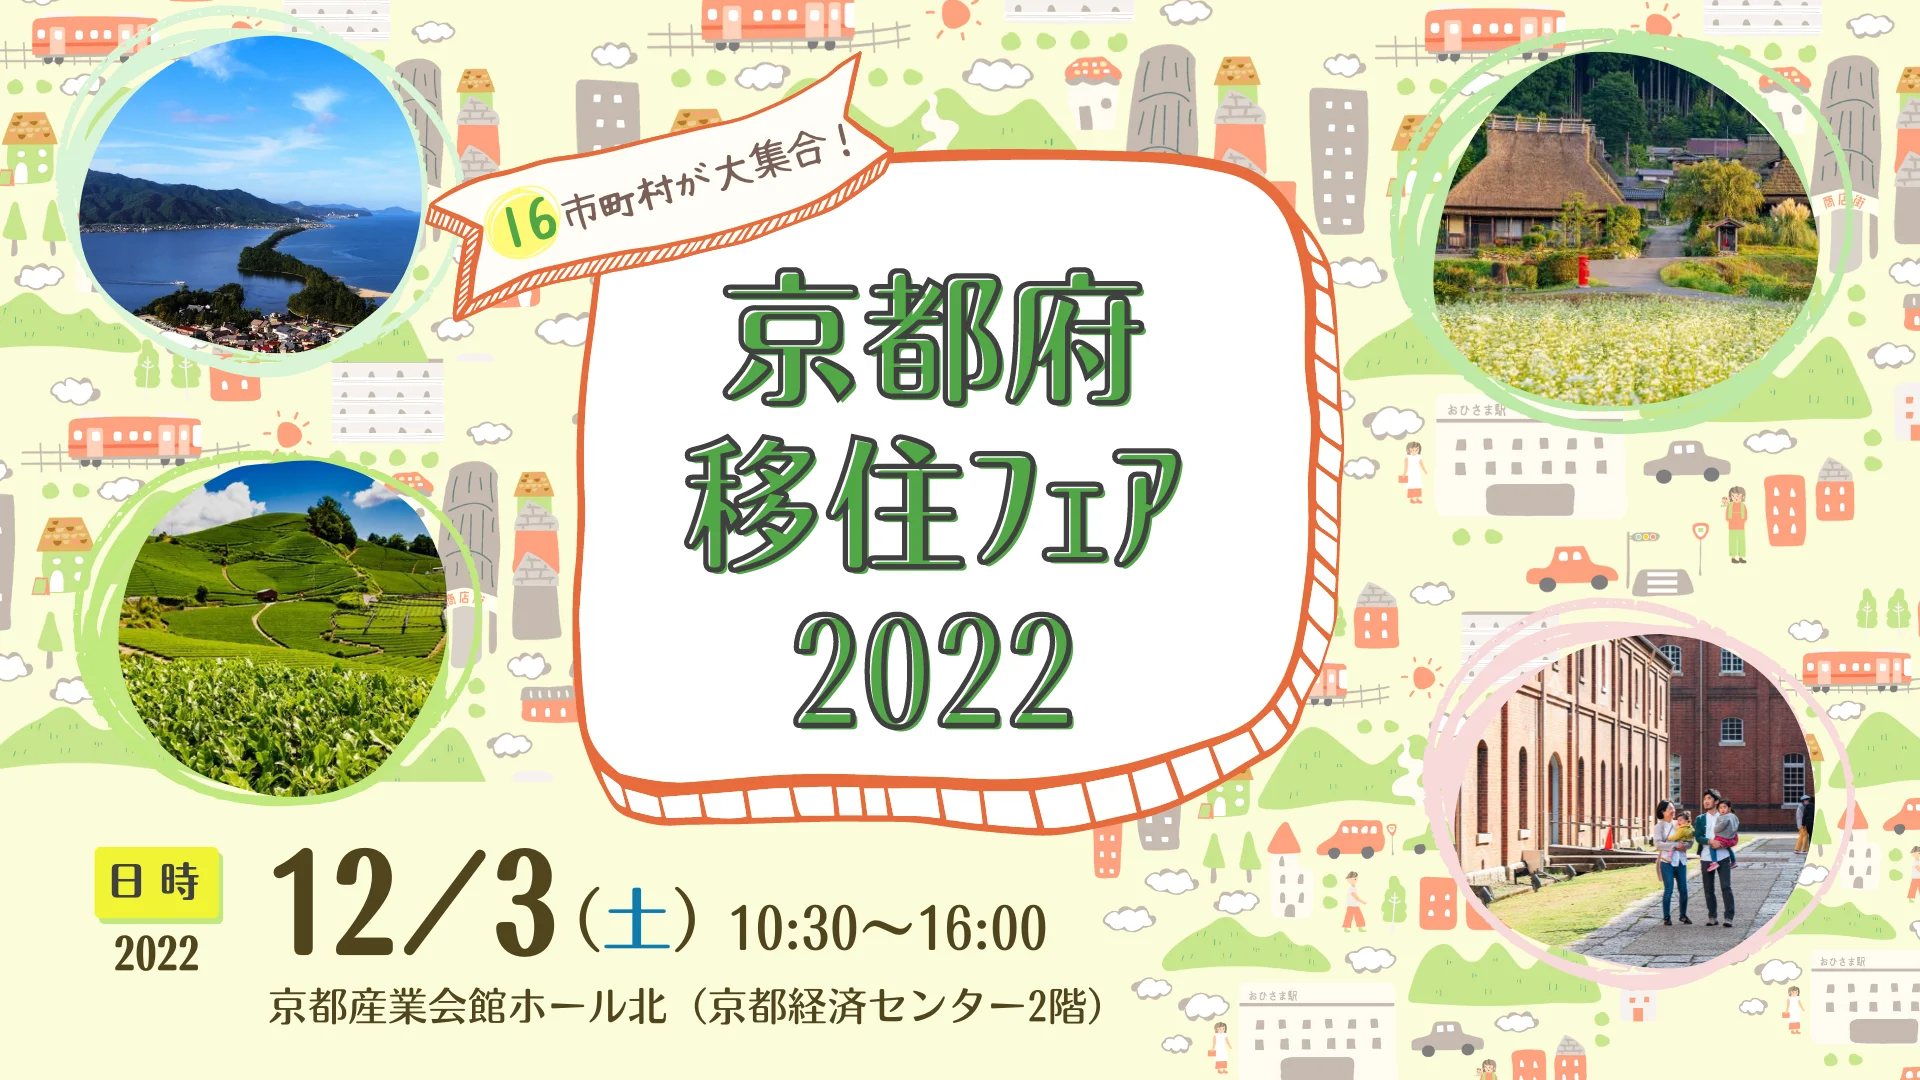 京都府移住フェア2022開催のお知らせ